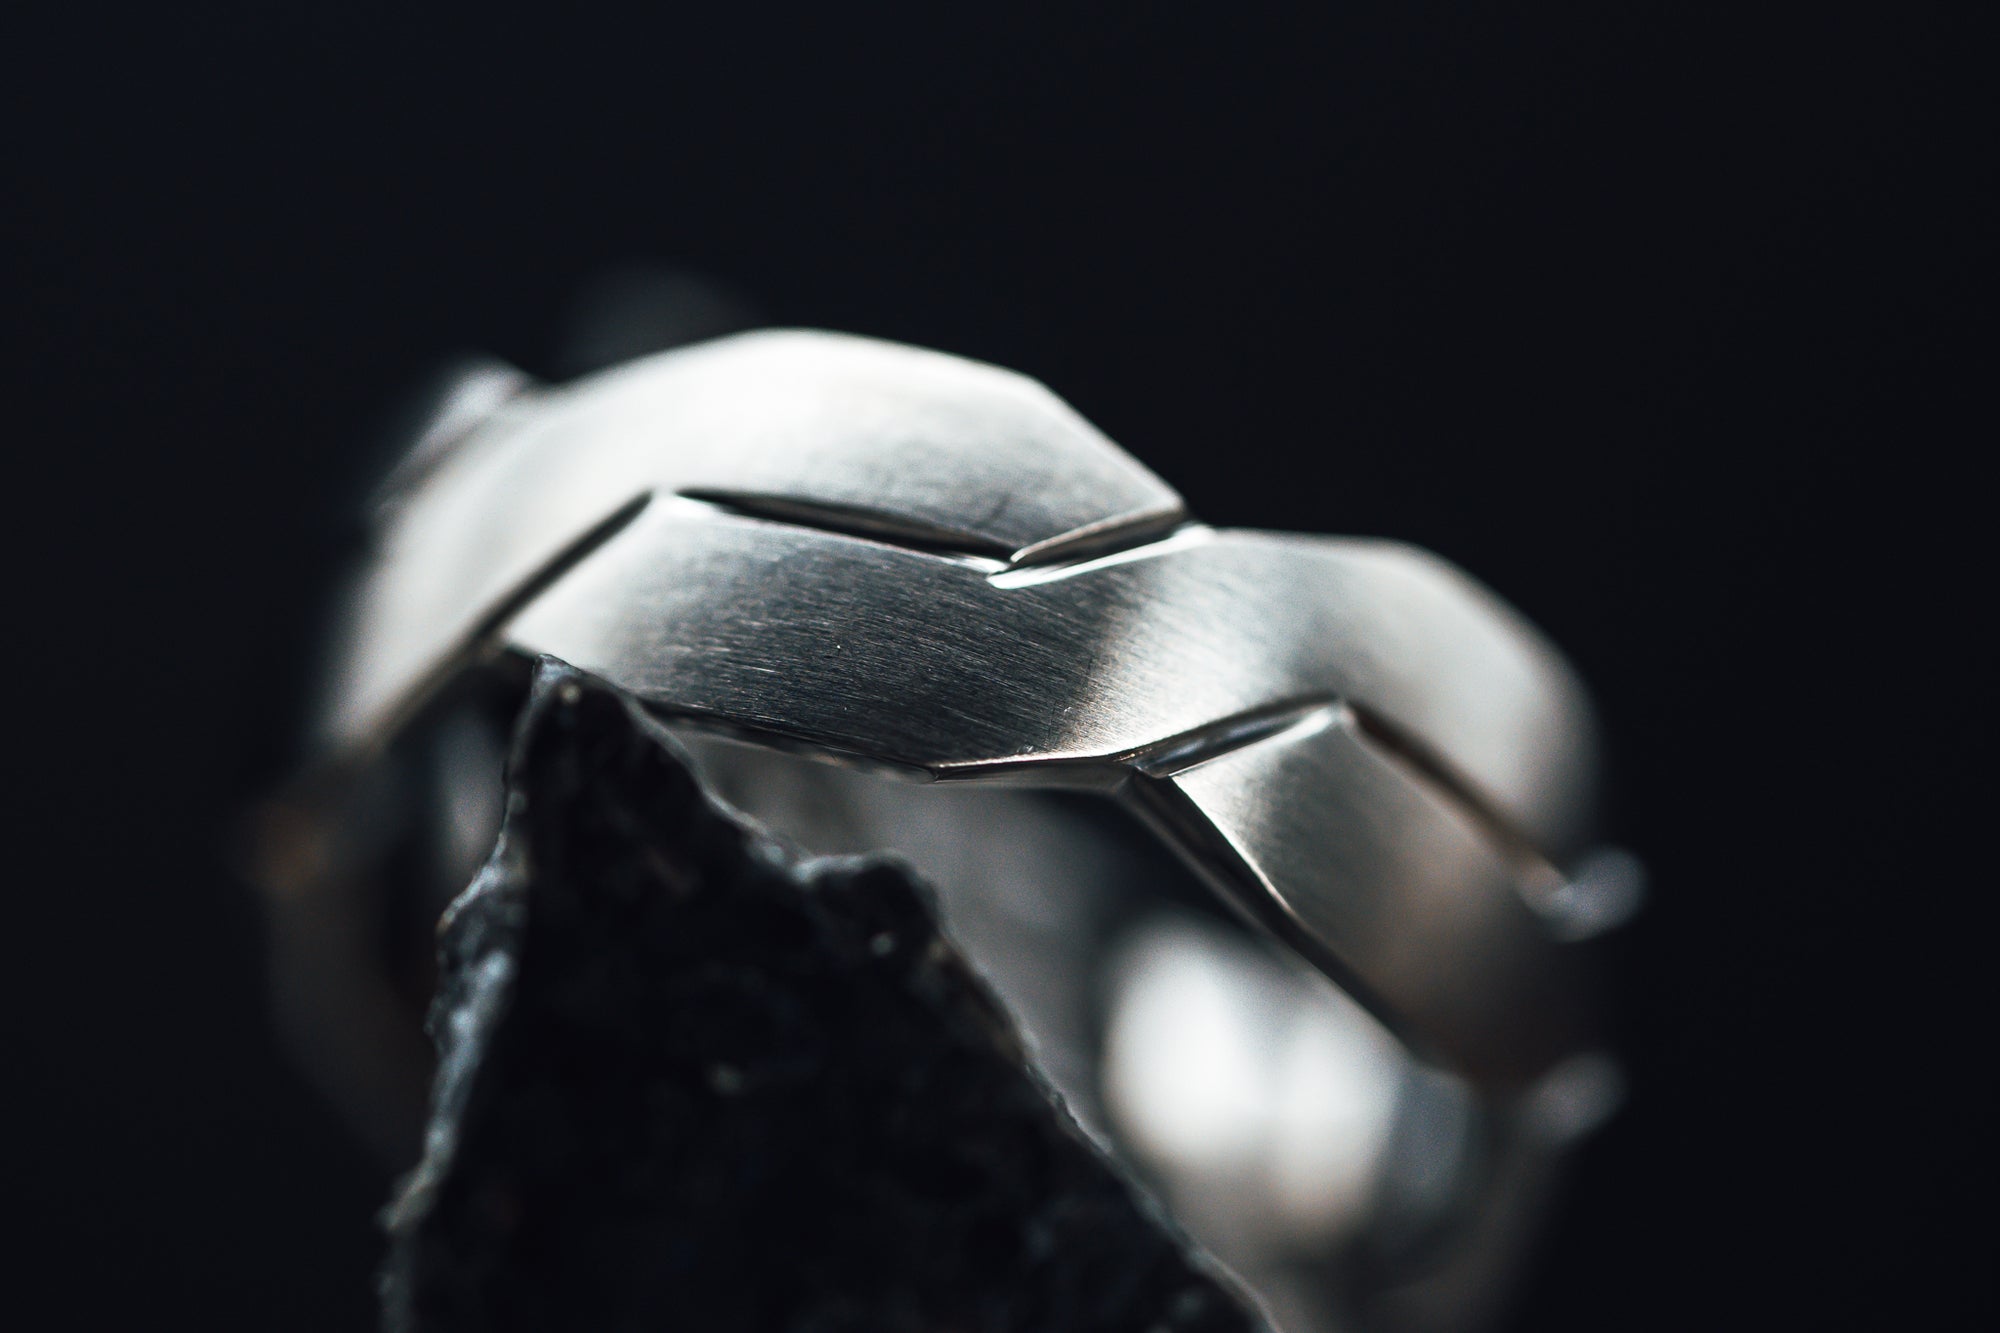 Titanium Interlocking Infinity Symbol Flat Brushed Men's Wedding Band With Polished Grooves